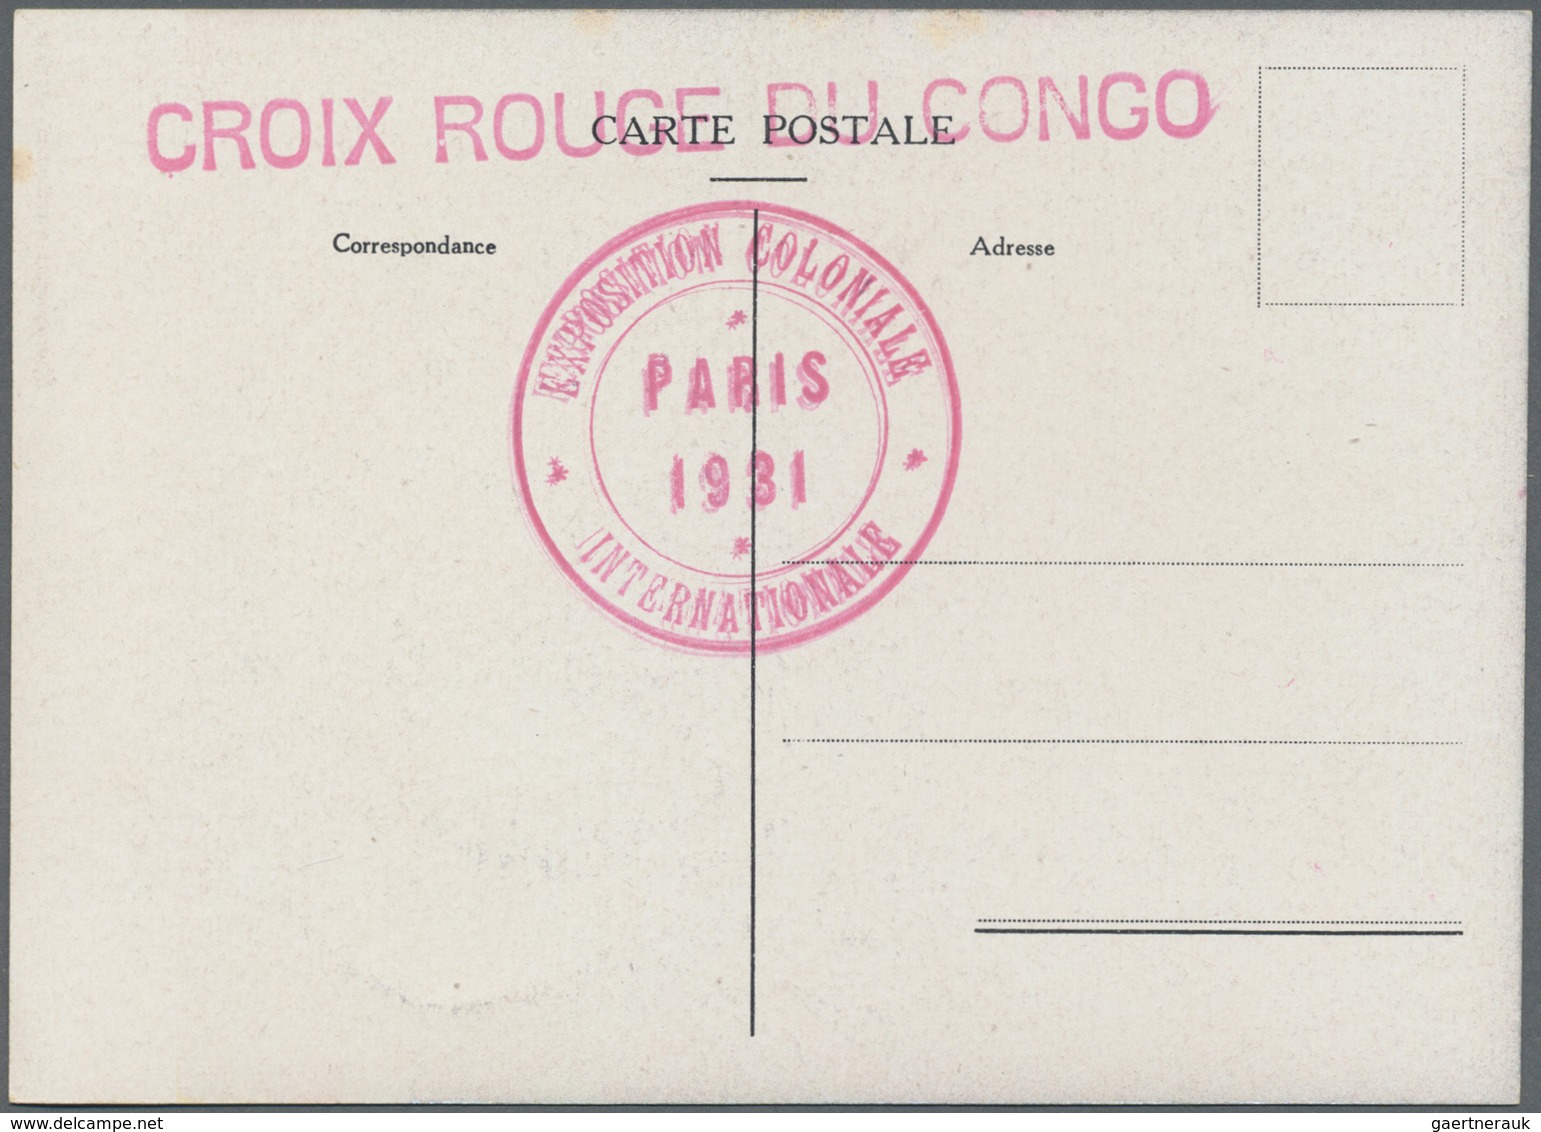 Thematik: Rotes Kreuz / red cross: 1931, Serie von 14 Ansichtskarten mit Umschlag zum Thema Rotes Kr